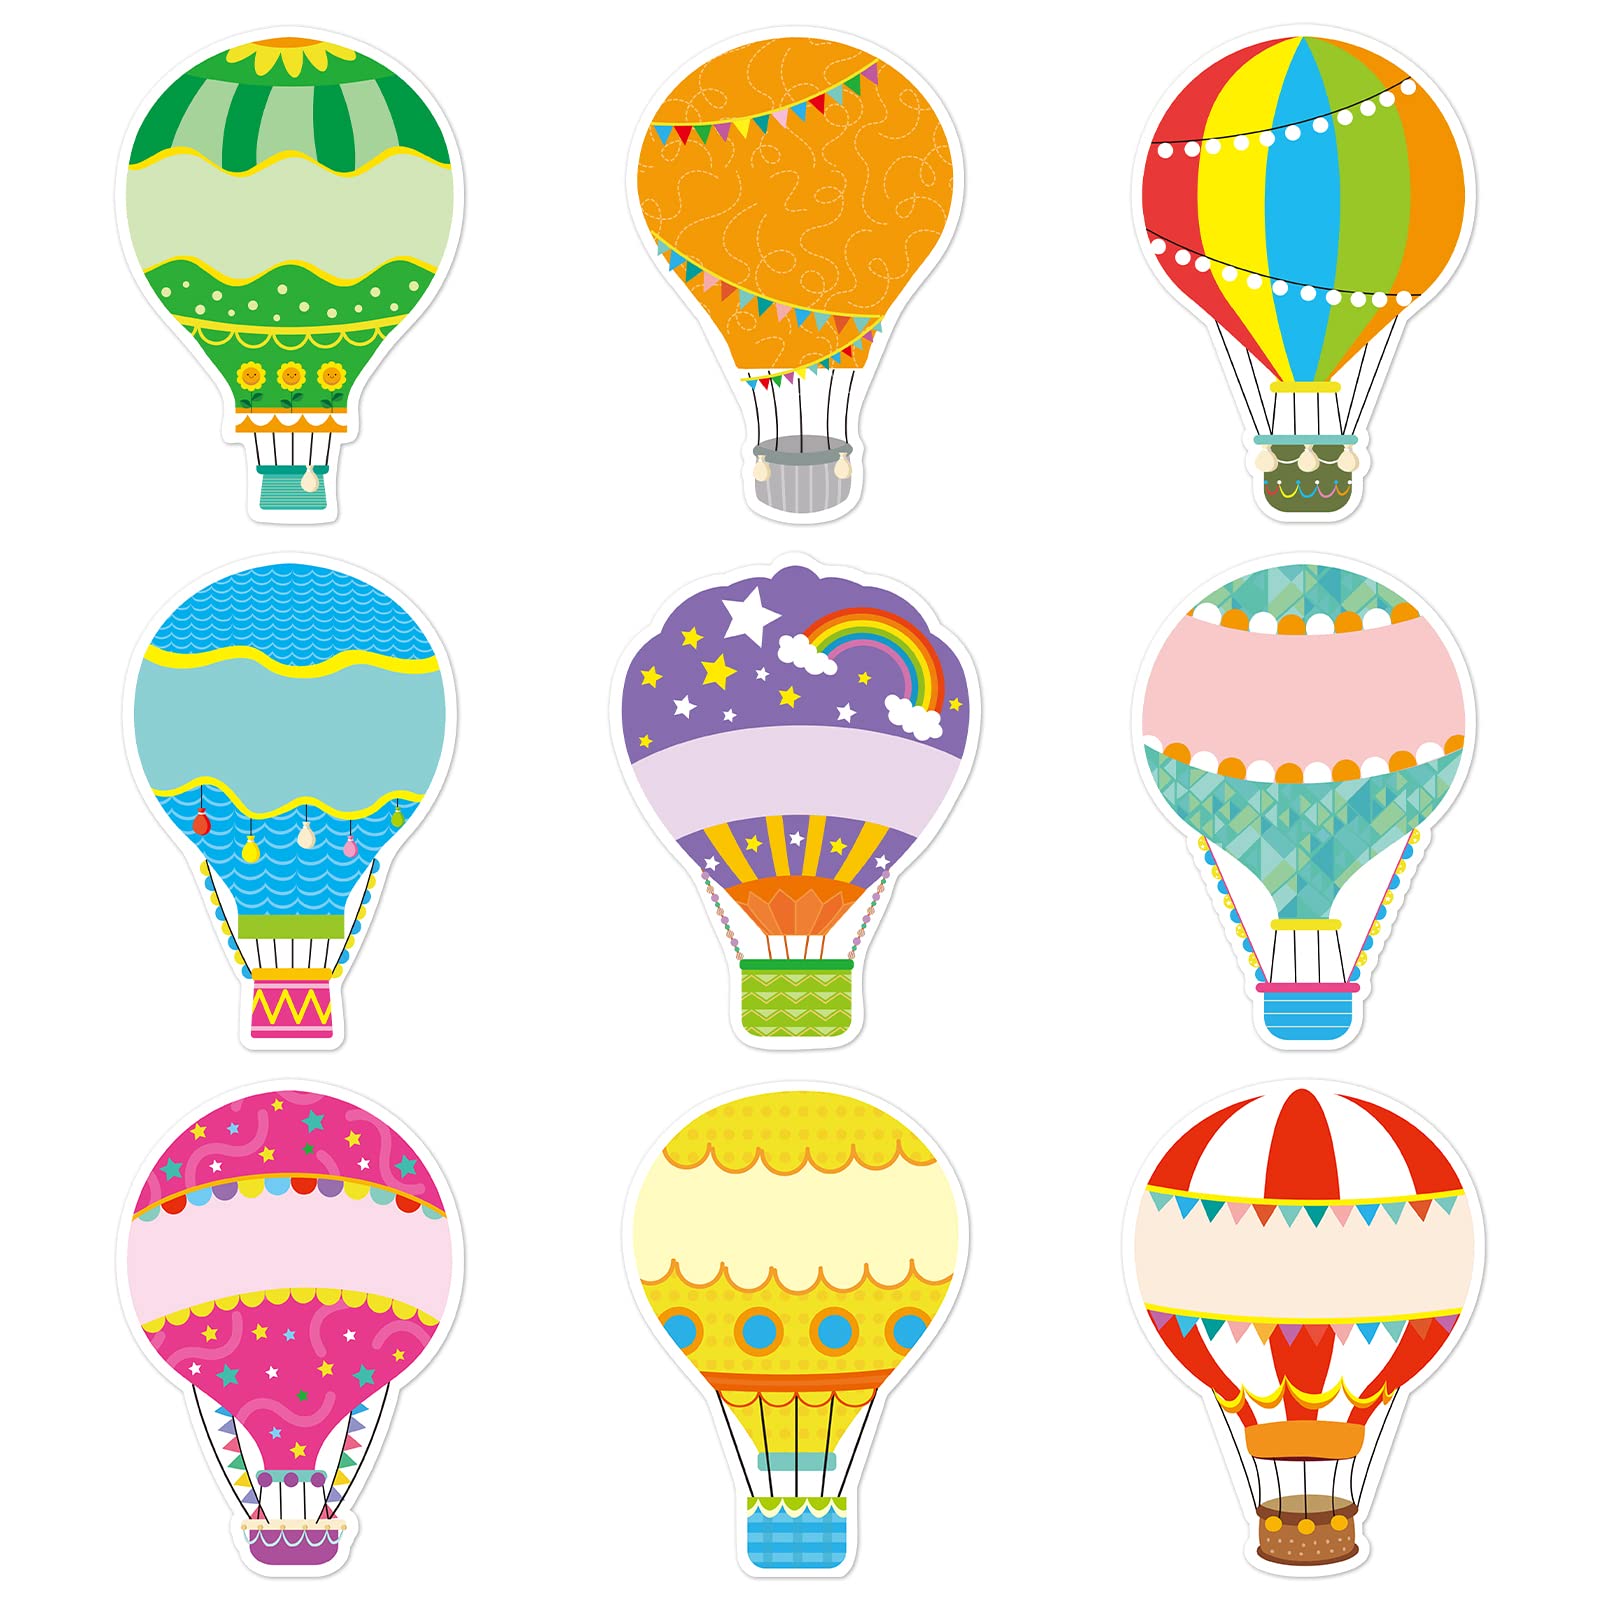 Amazon.com: 45 Pcs Colorful Hot Air Balloons Cutouts Birthday ...